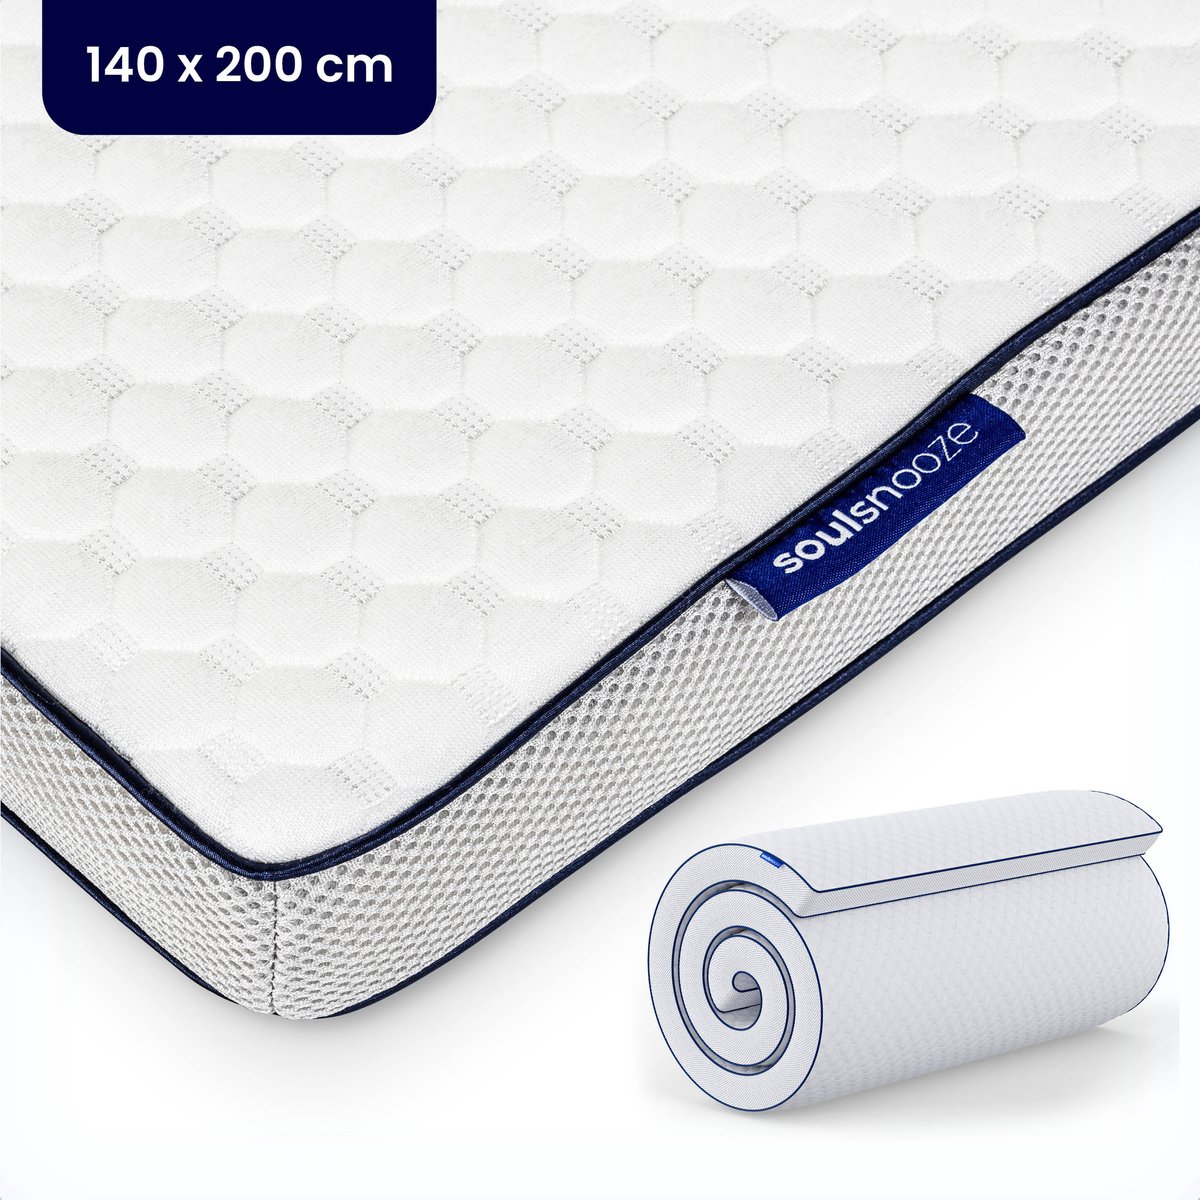 Soulsnooze® - DuoComfort Premium Topper 140x200 cm - Topdekmatras - Aanpasbaar Design - 3D Air Mesh - Traagschuim - Memory Foam Matras - 30 Nachten Proefslapen - Wasbare Hoes - Anti Allergie